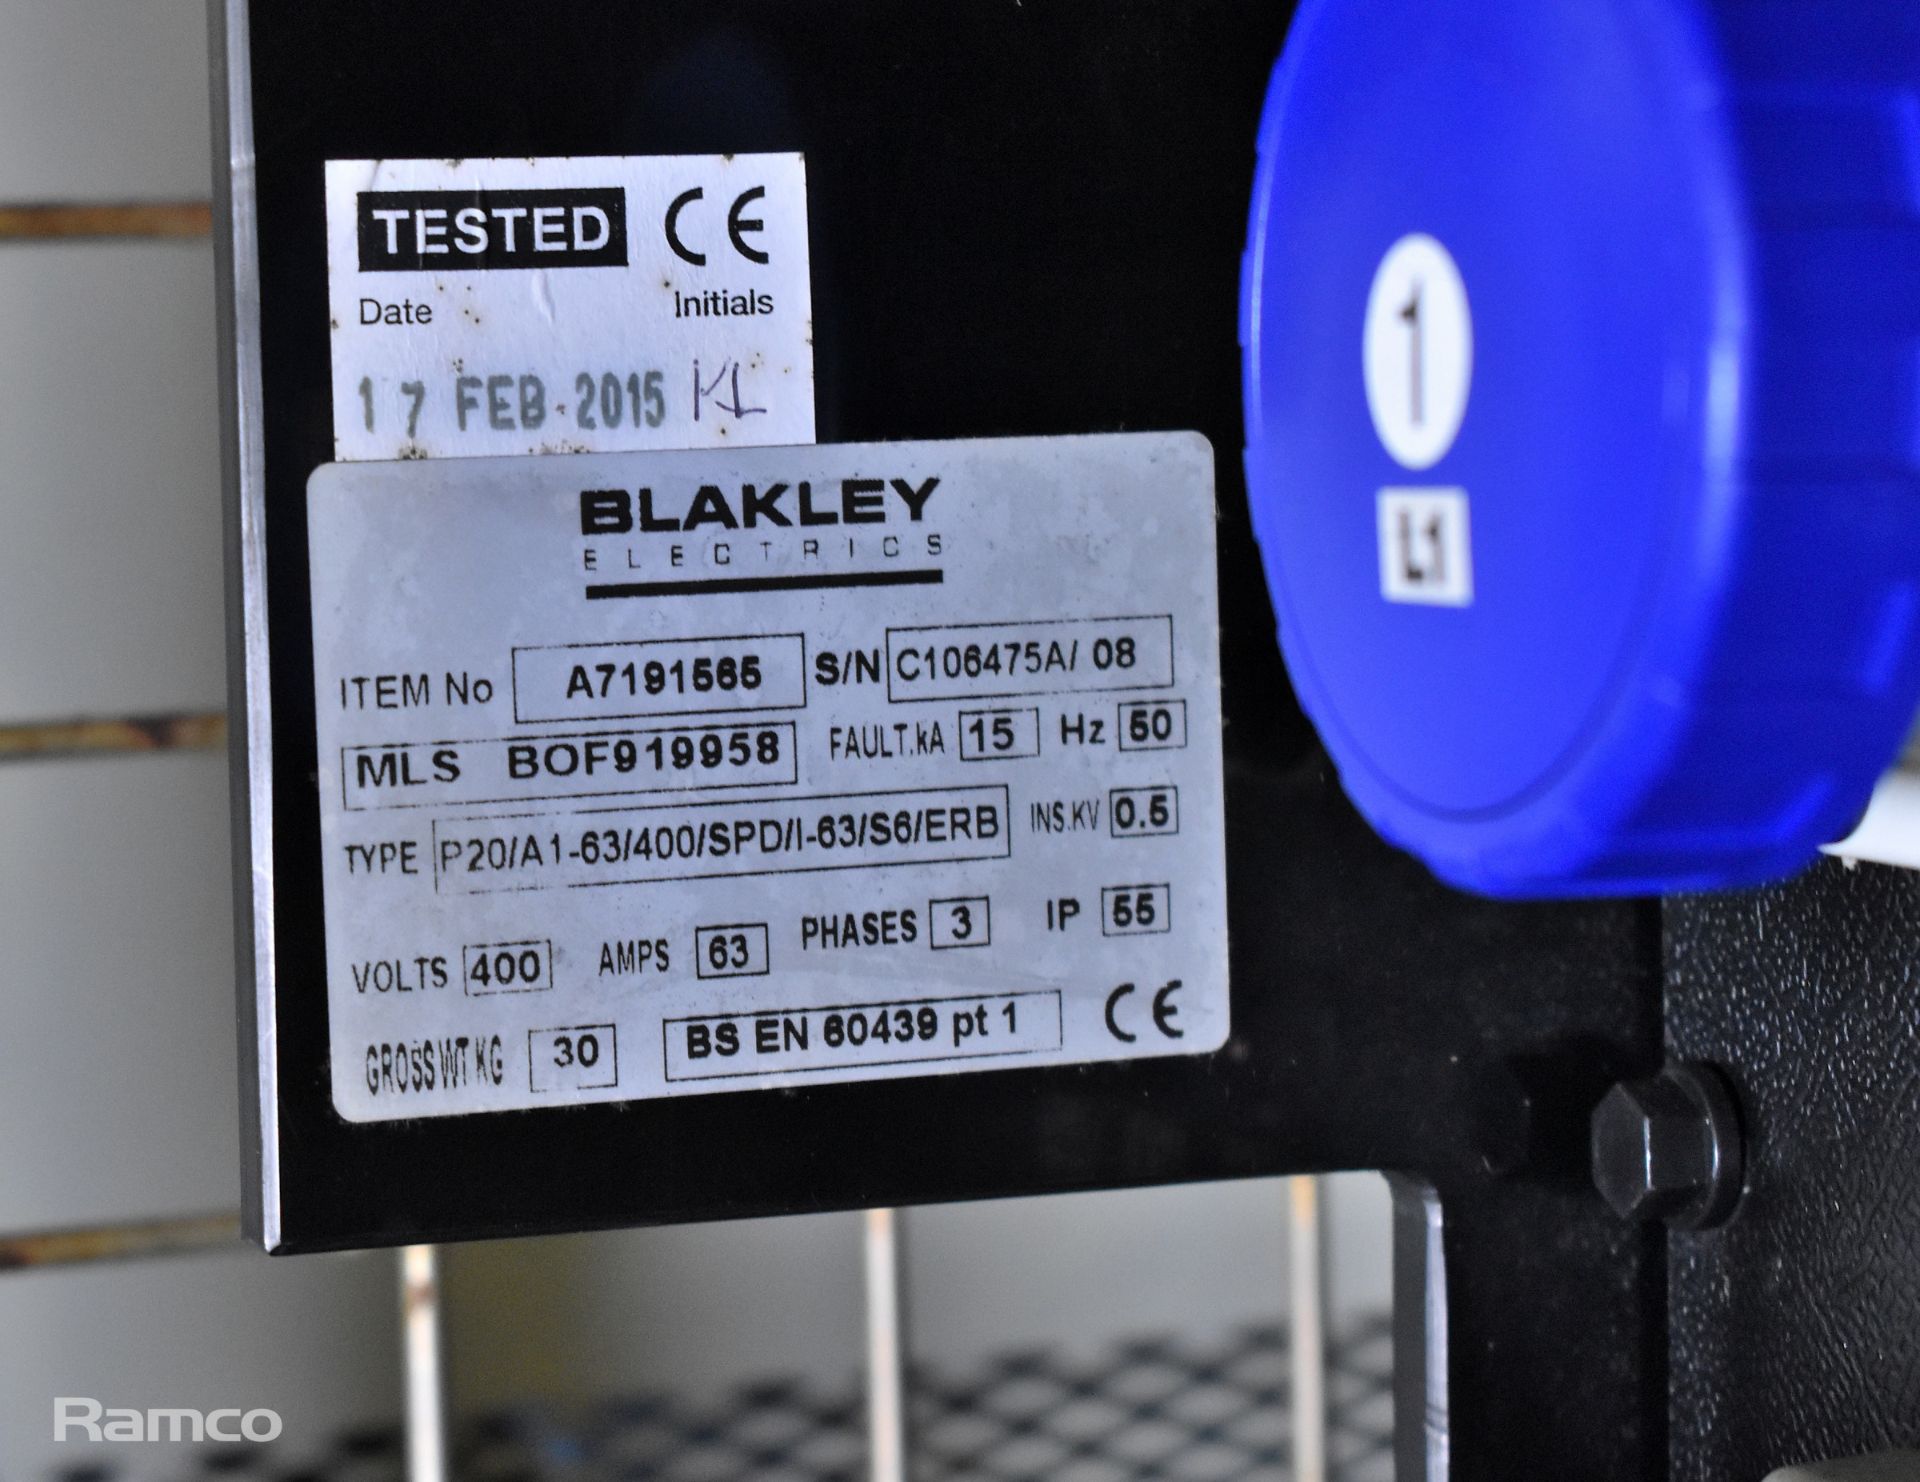 Blakley Electrics P20/A1-63/400/SPD/I-63/S6 ERB power distribution box - 400V - 63A - 3ph - 50hz - Image 2 of 3